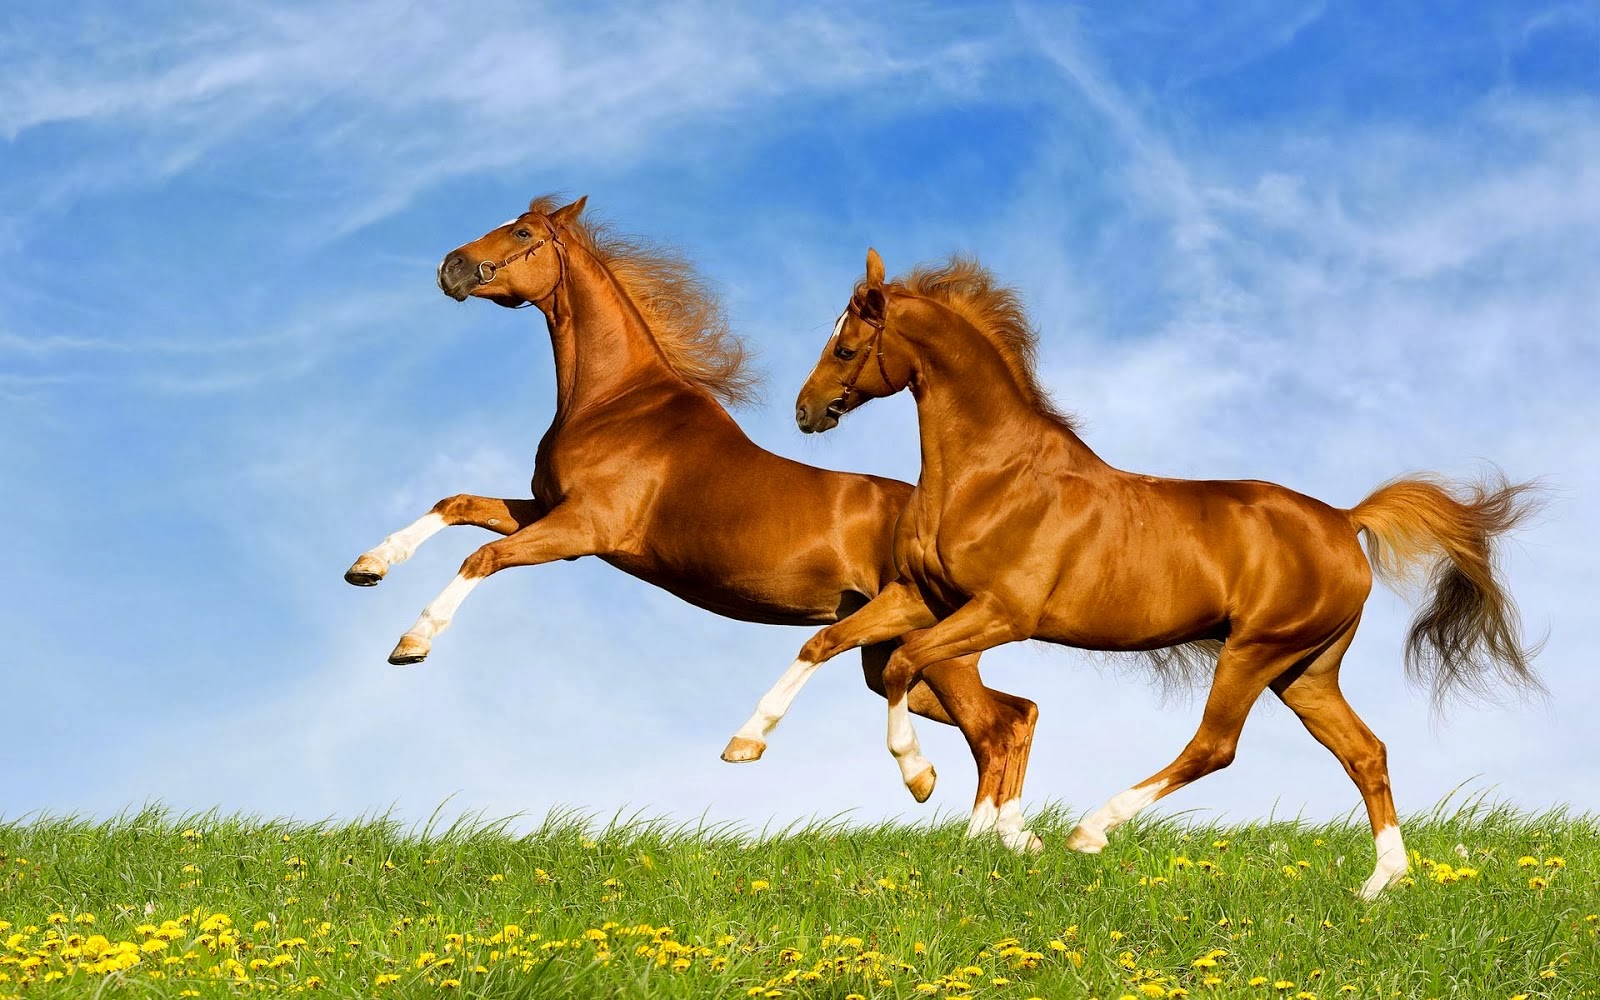 fondos de pantalla de caballos gratis,caballo,melena,semental,mustang caballo,pradera